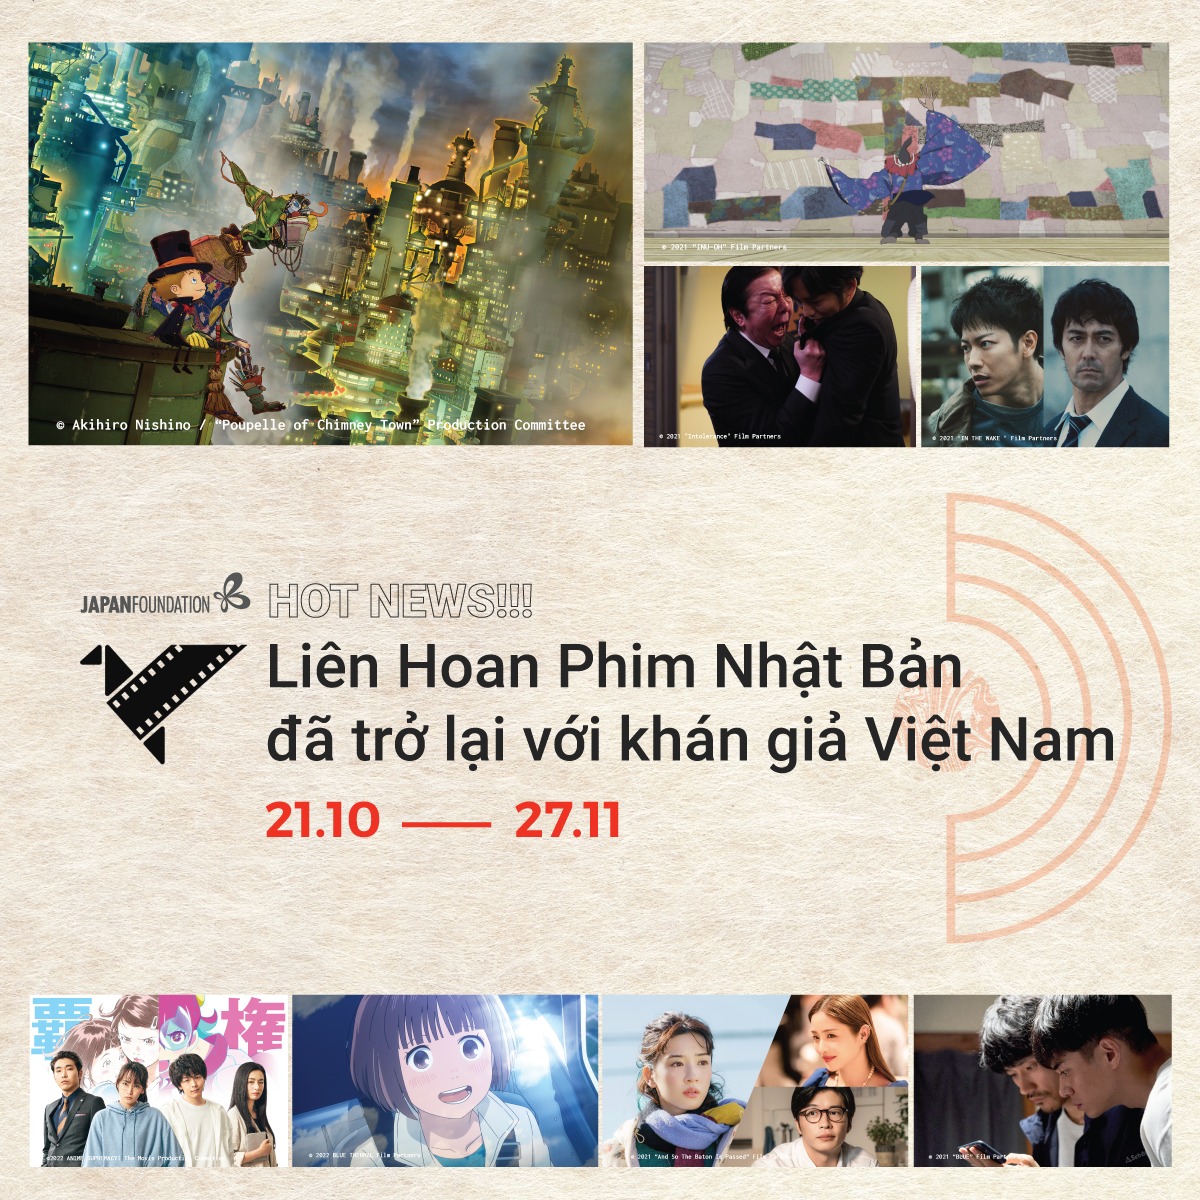 Liên hoan Phim Nhật Bản 2022 diễn ra ở 4 thành phố lớn tại Việt Nam